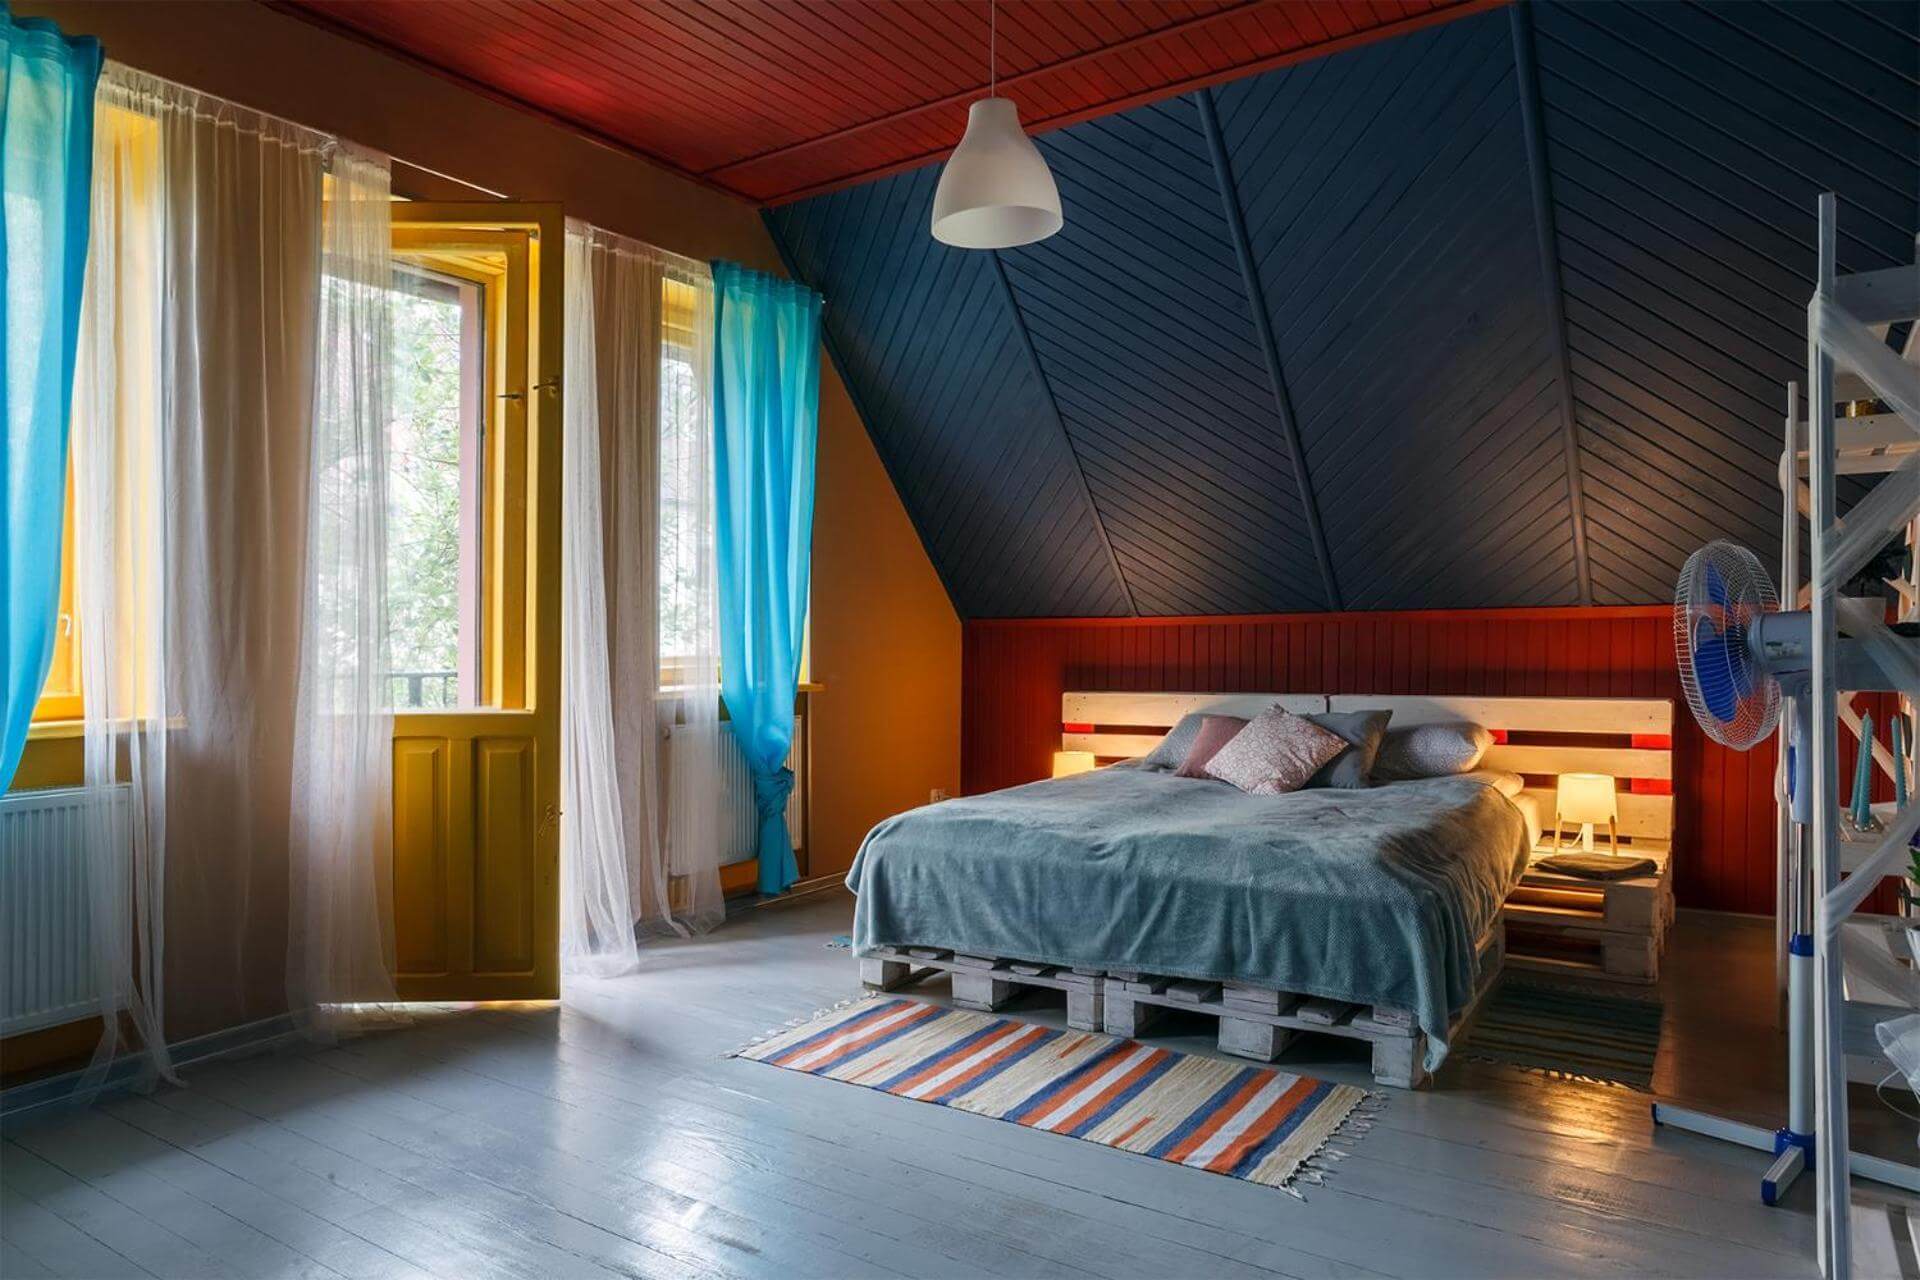 Яркие цвета в интерьере. Основание кровати - из деревянных поддонов.